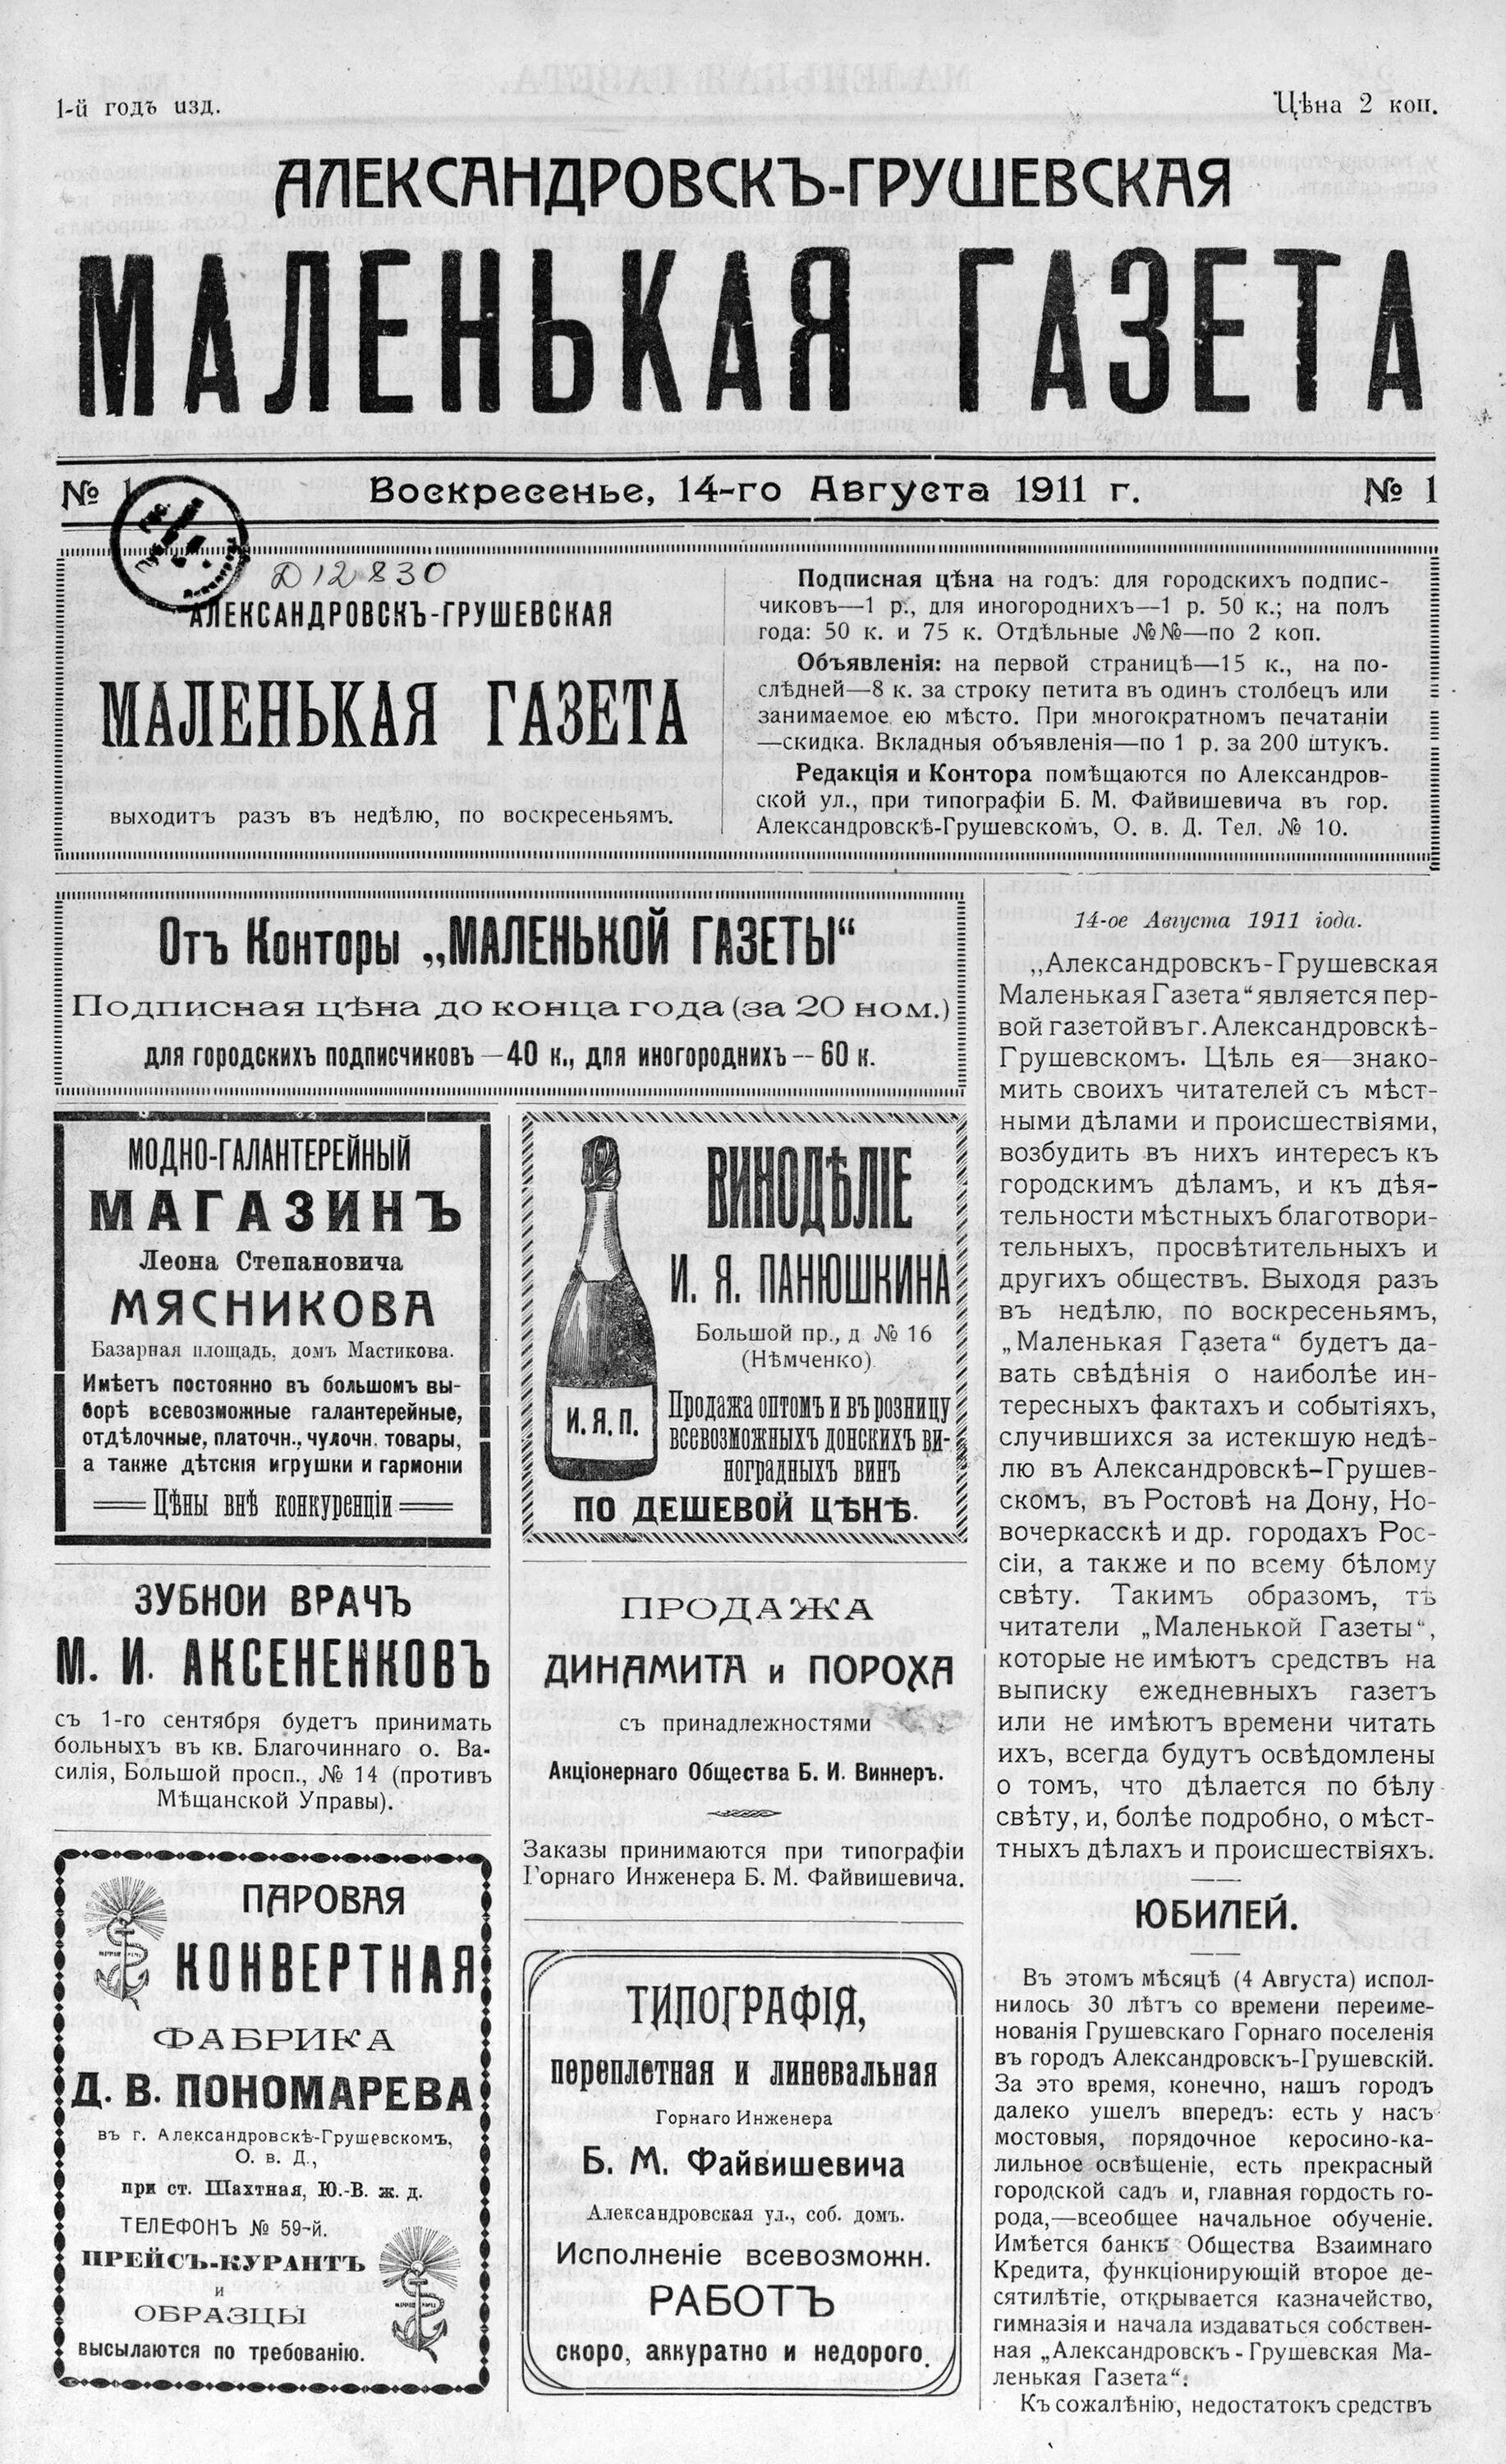 Газета. Маленькая газета. Название газет. Газета 1911.